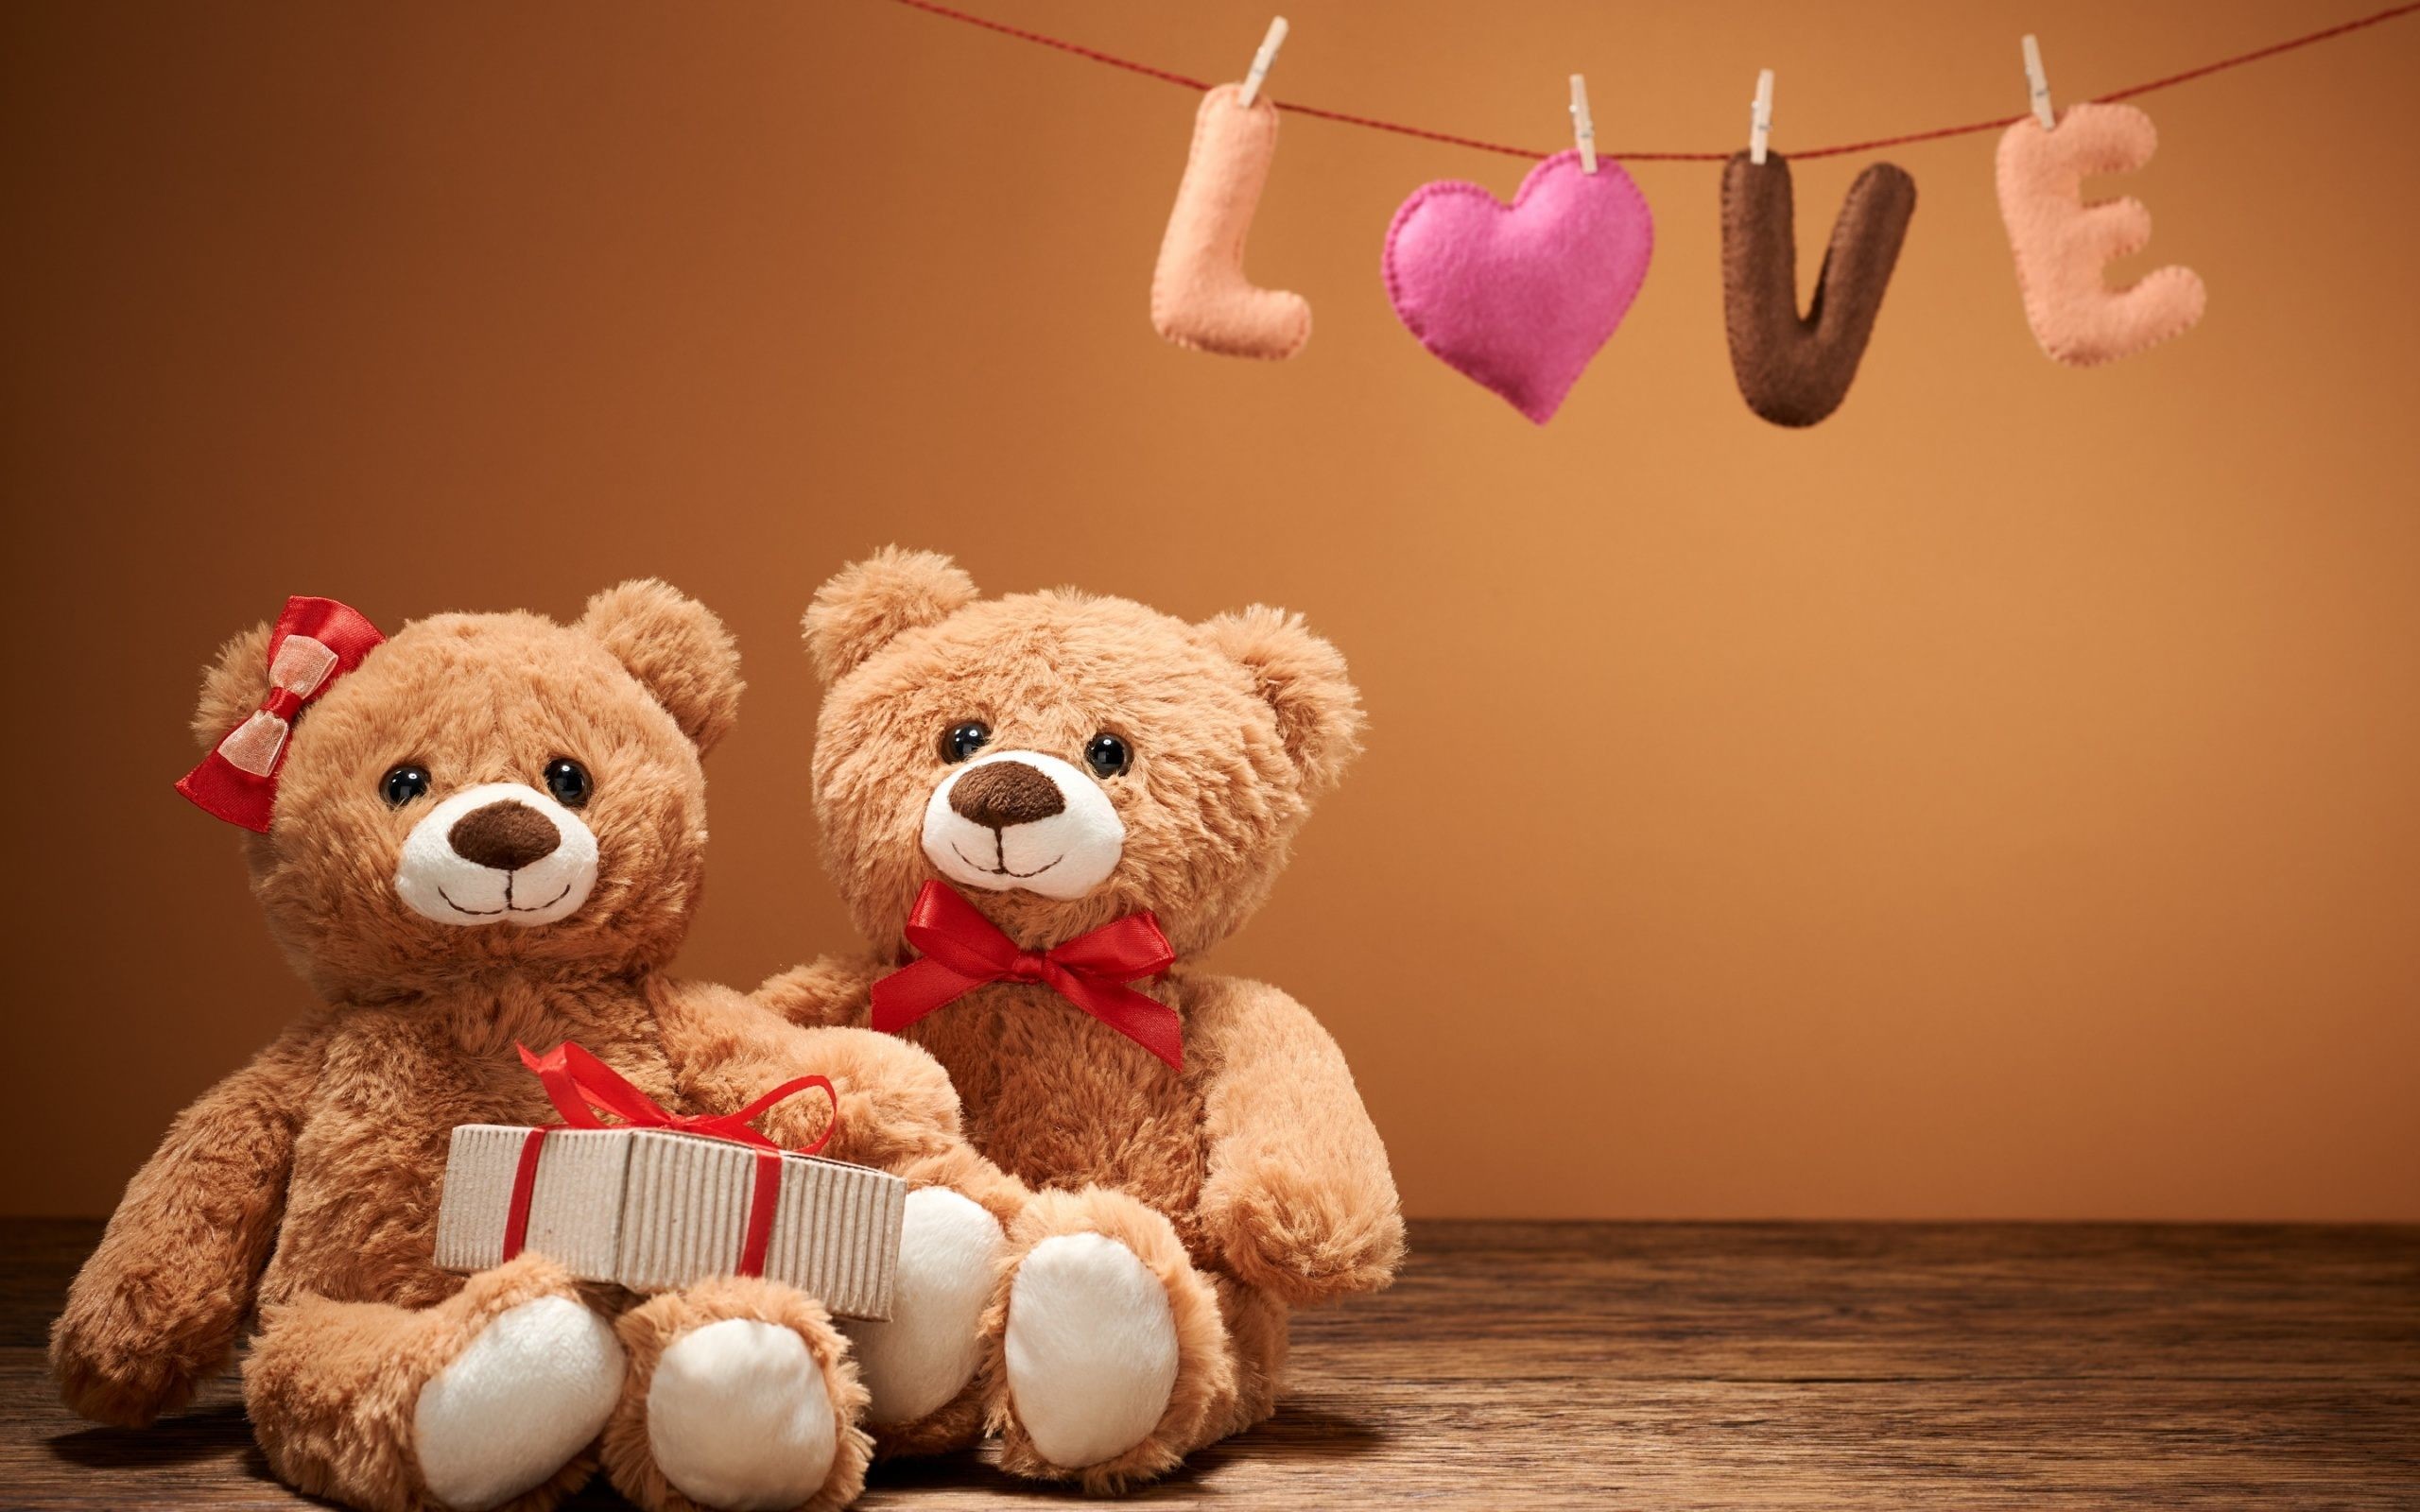 teddy bear wallpaper hd,stuffed toy,teddy bear,toy,plush,pink